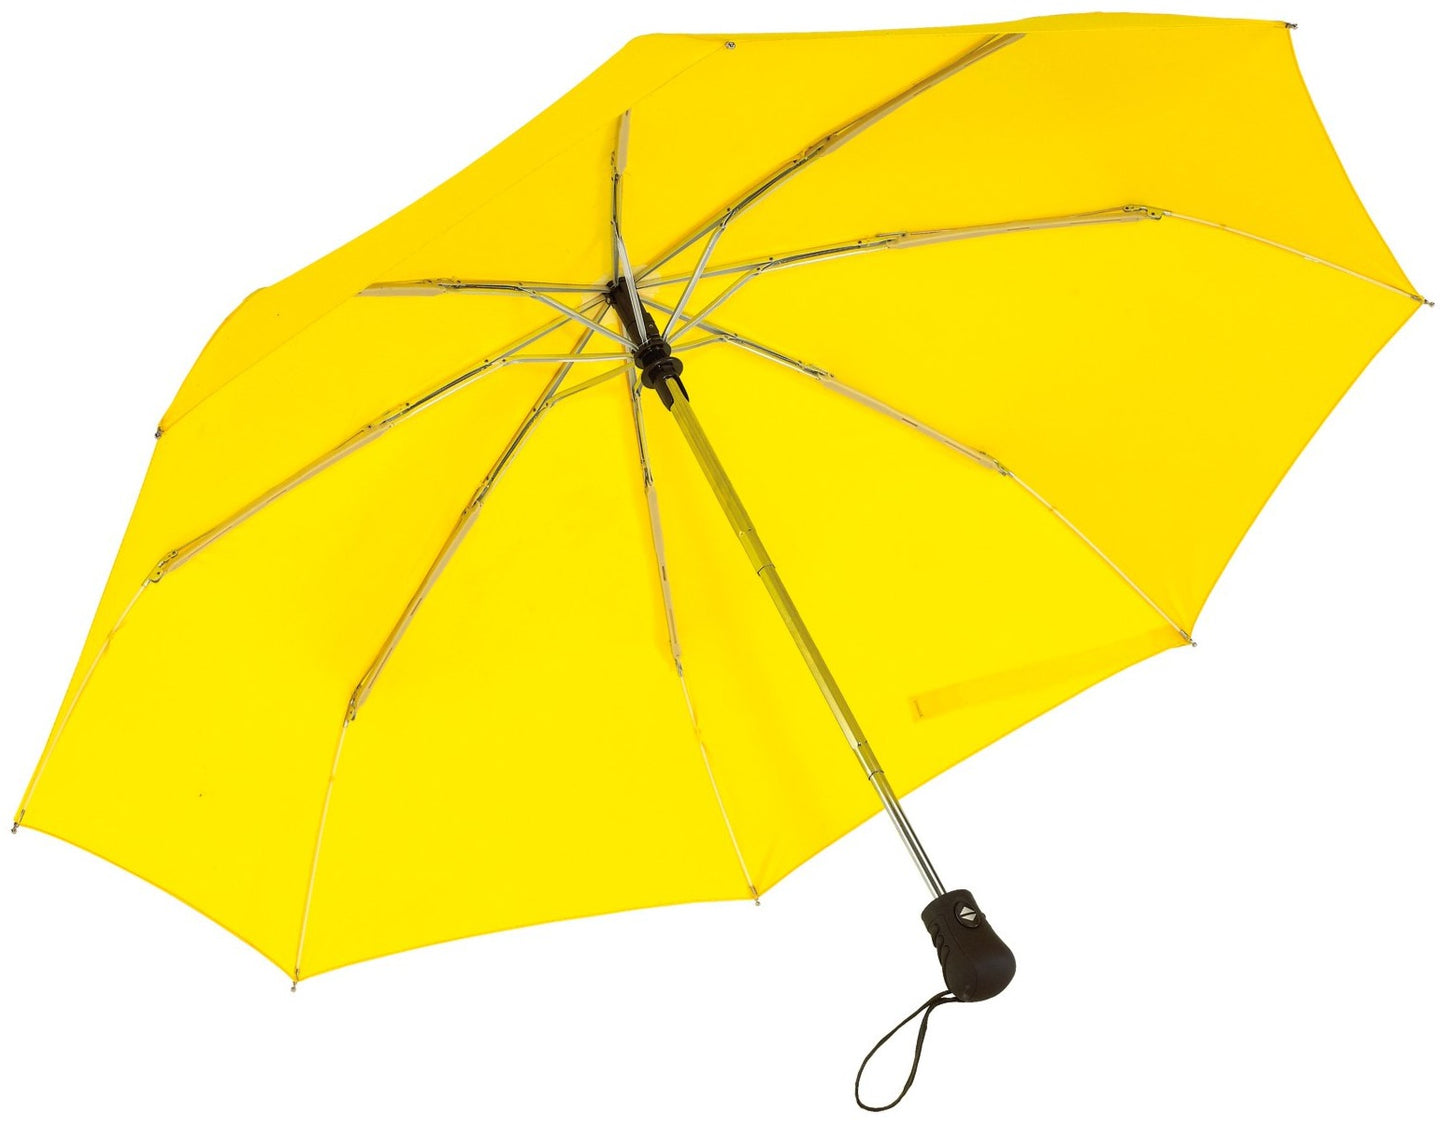 Κίτρινη Ομπρέλα βροχής, μίνι, Αντιανεμική και Twinmatic (κωδικός 01-01-0200).